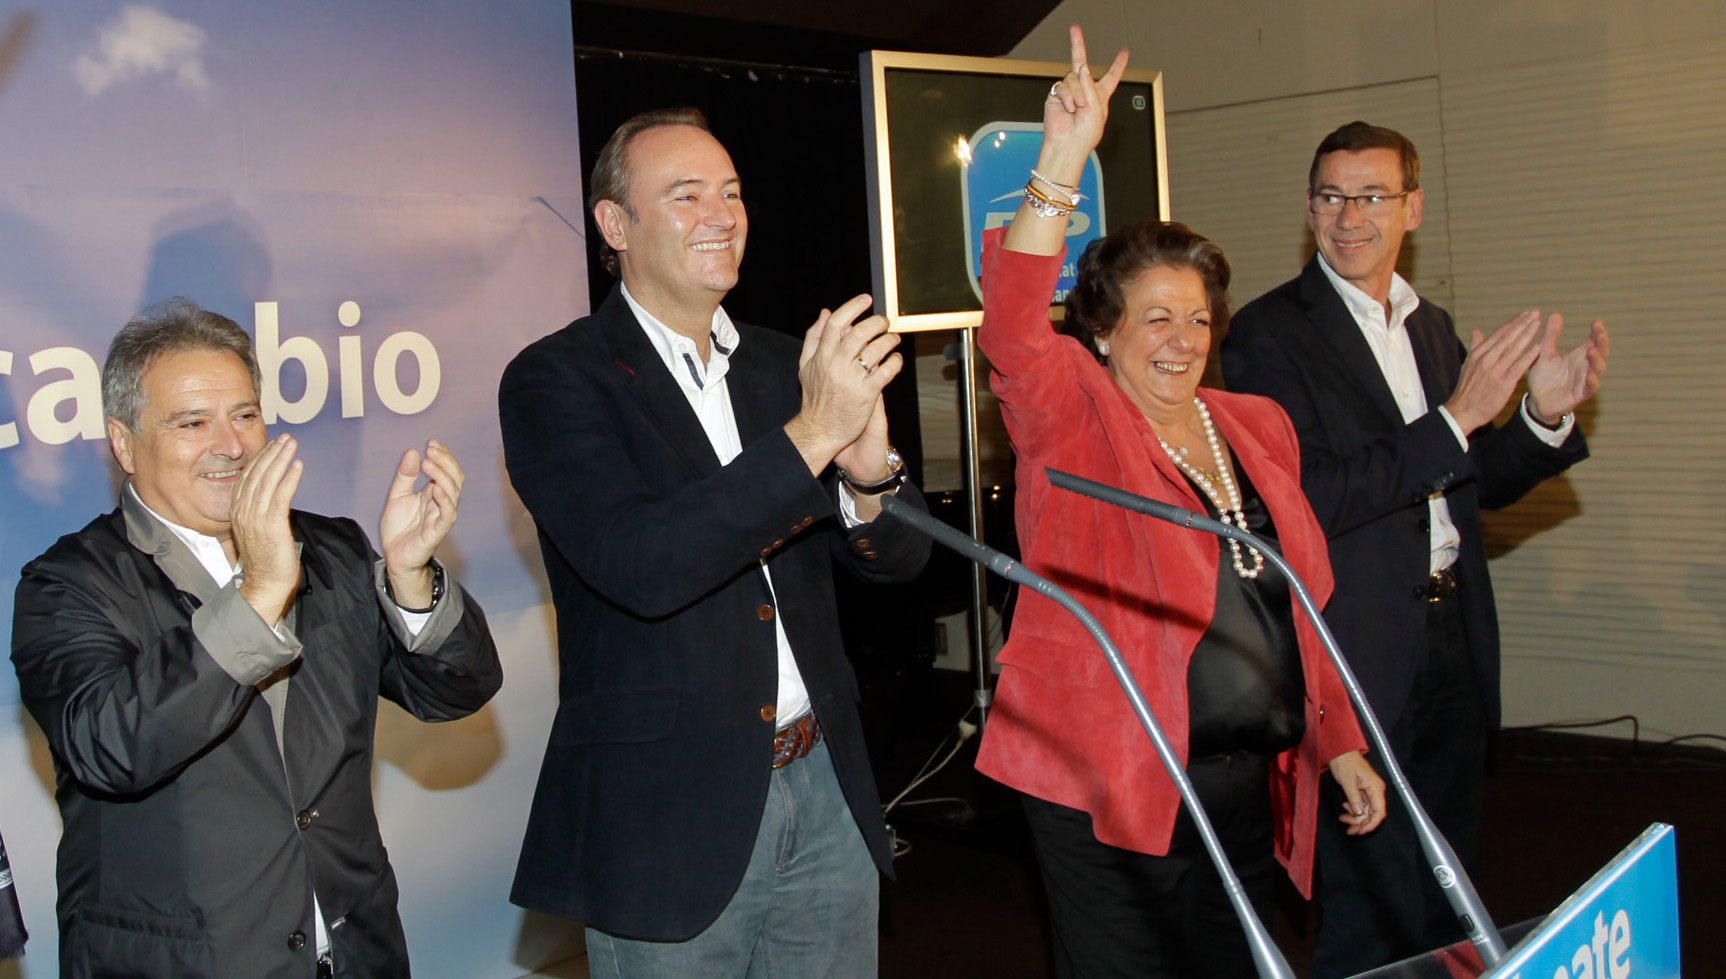 Alfonso Rus, Alberto Fabra y Rita Barberá celebrando la victoria de Rajoy el 20-N de 2011